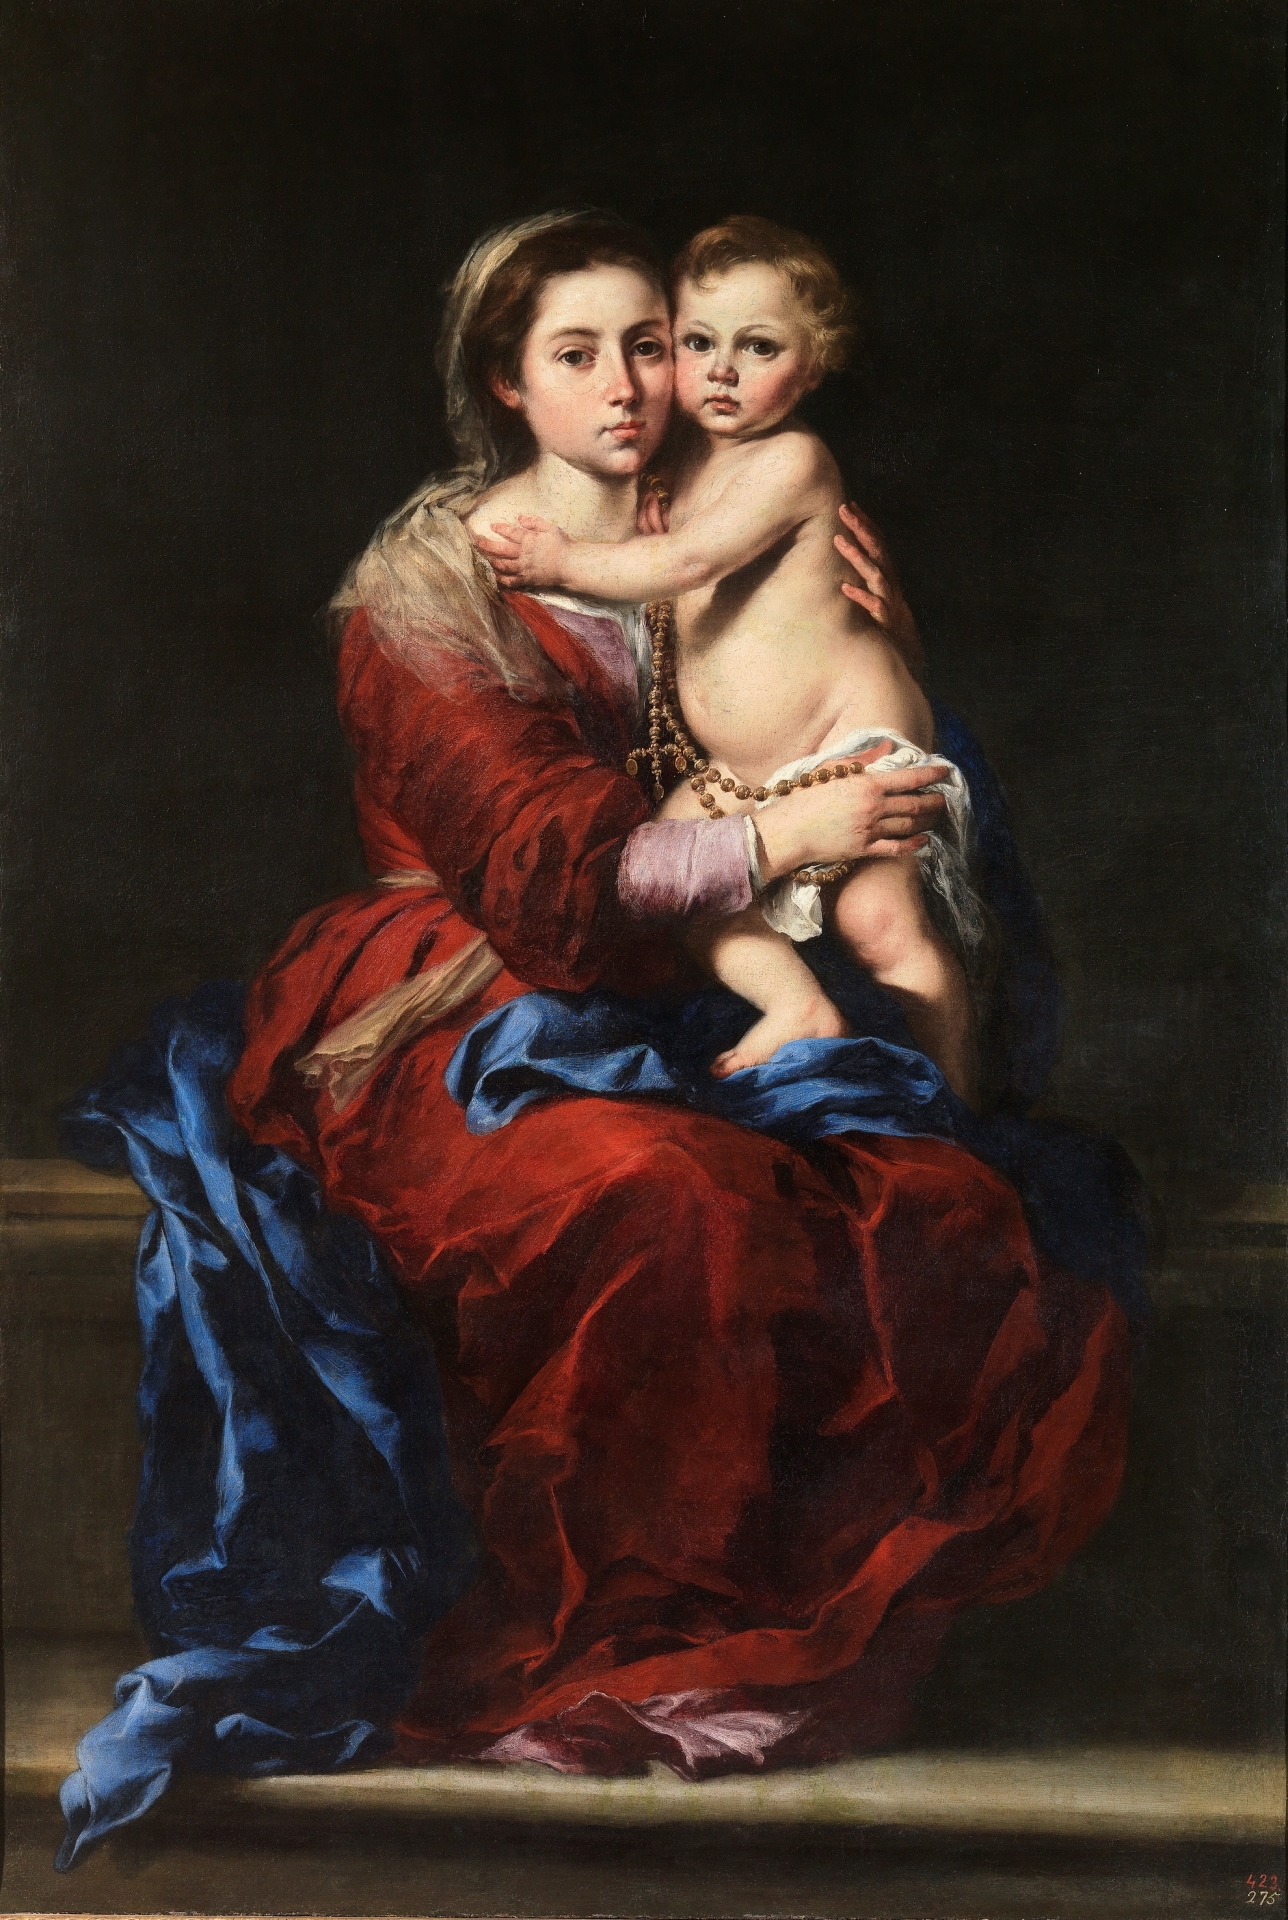 La Virgen Rosario - Colección - Museo Nacional del Prado